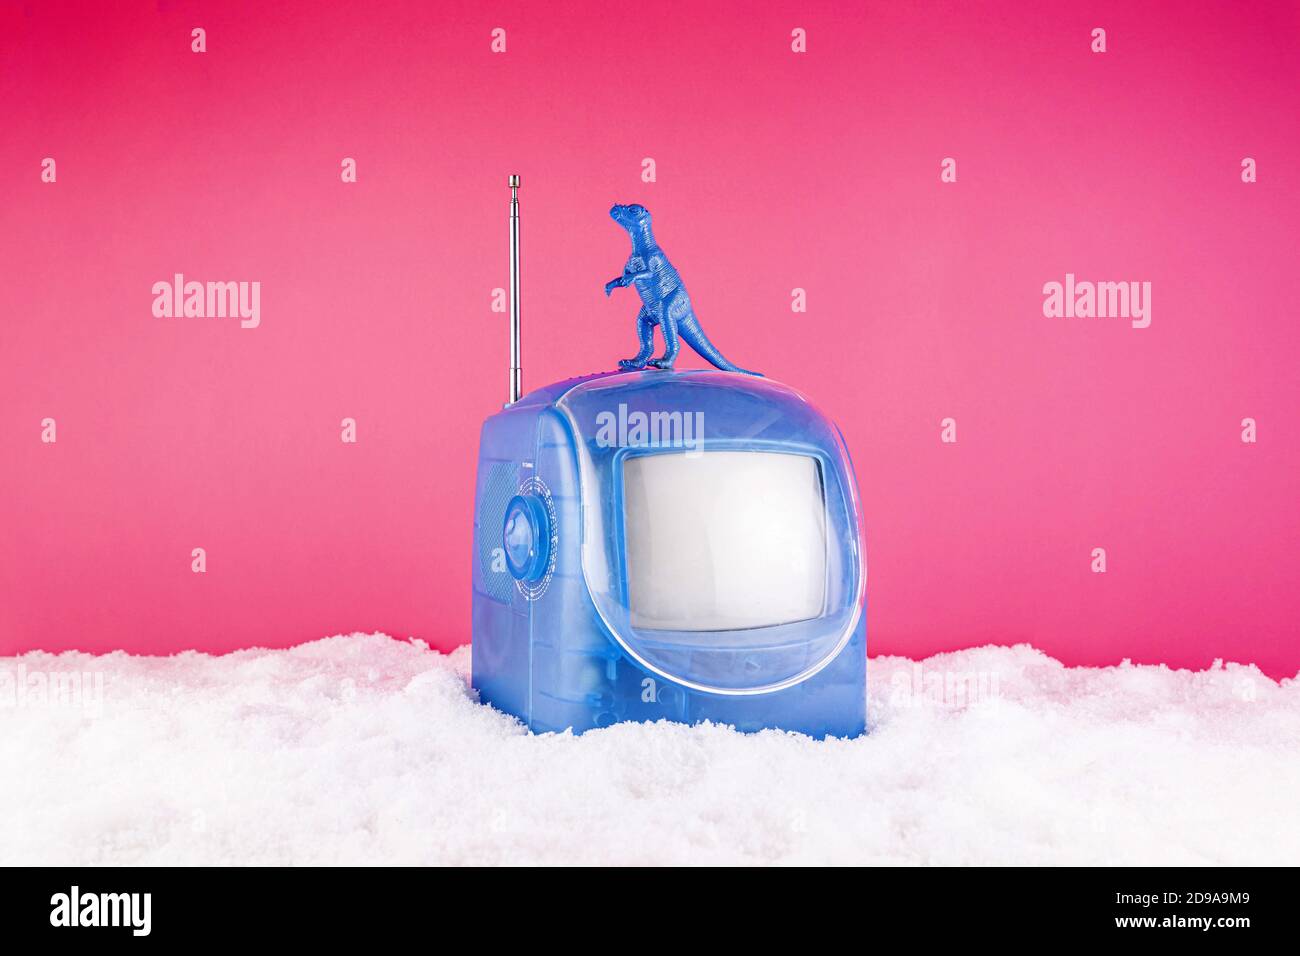 TV giocattolo con drago e neve per decorazioni natalizie Foto Stock